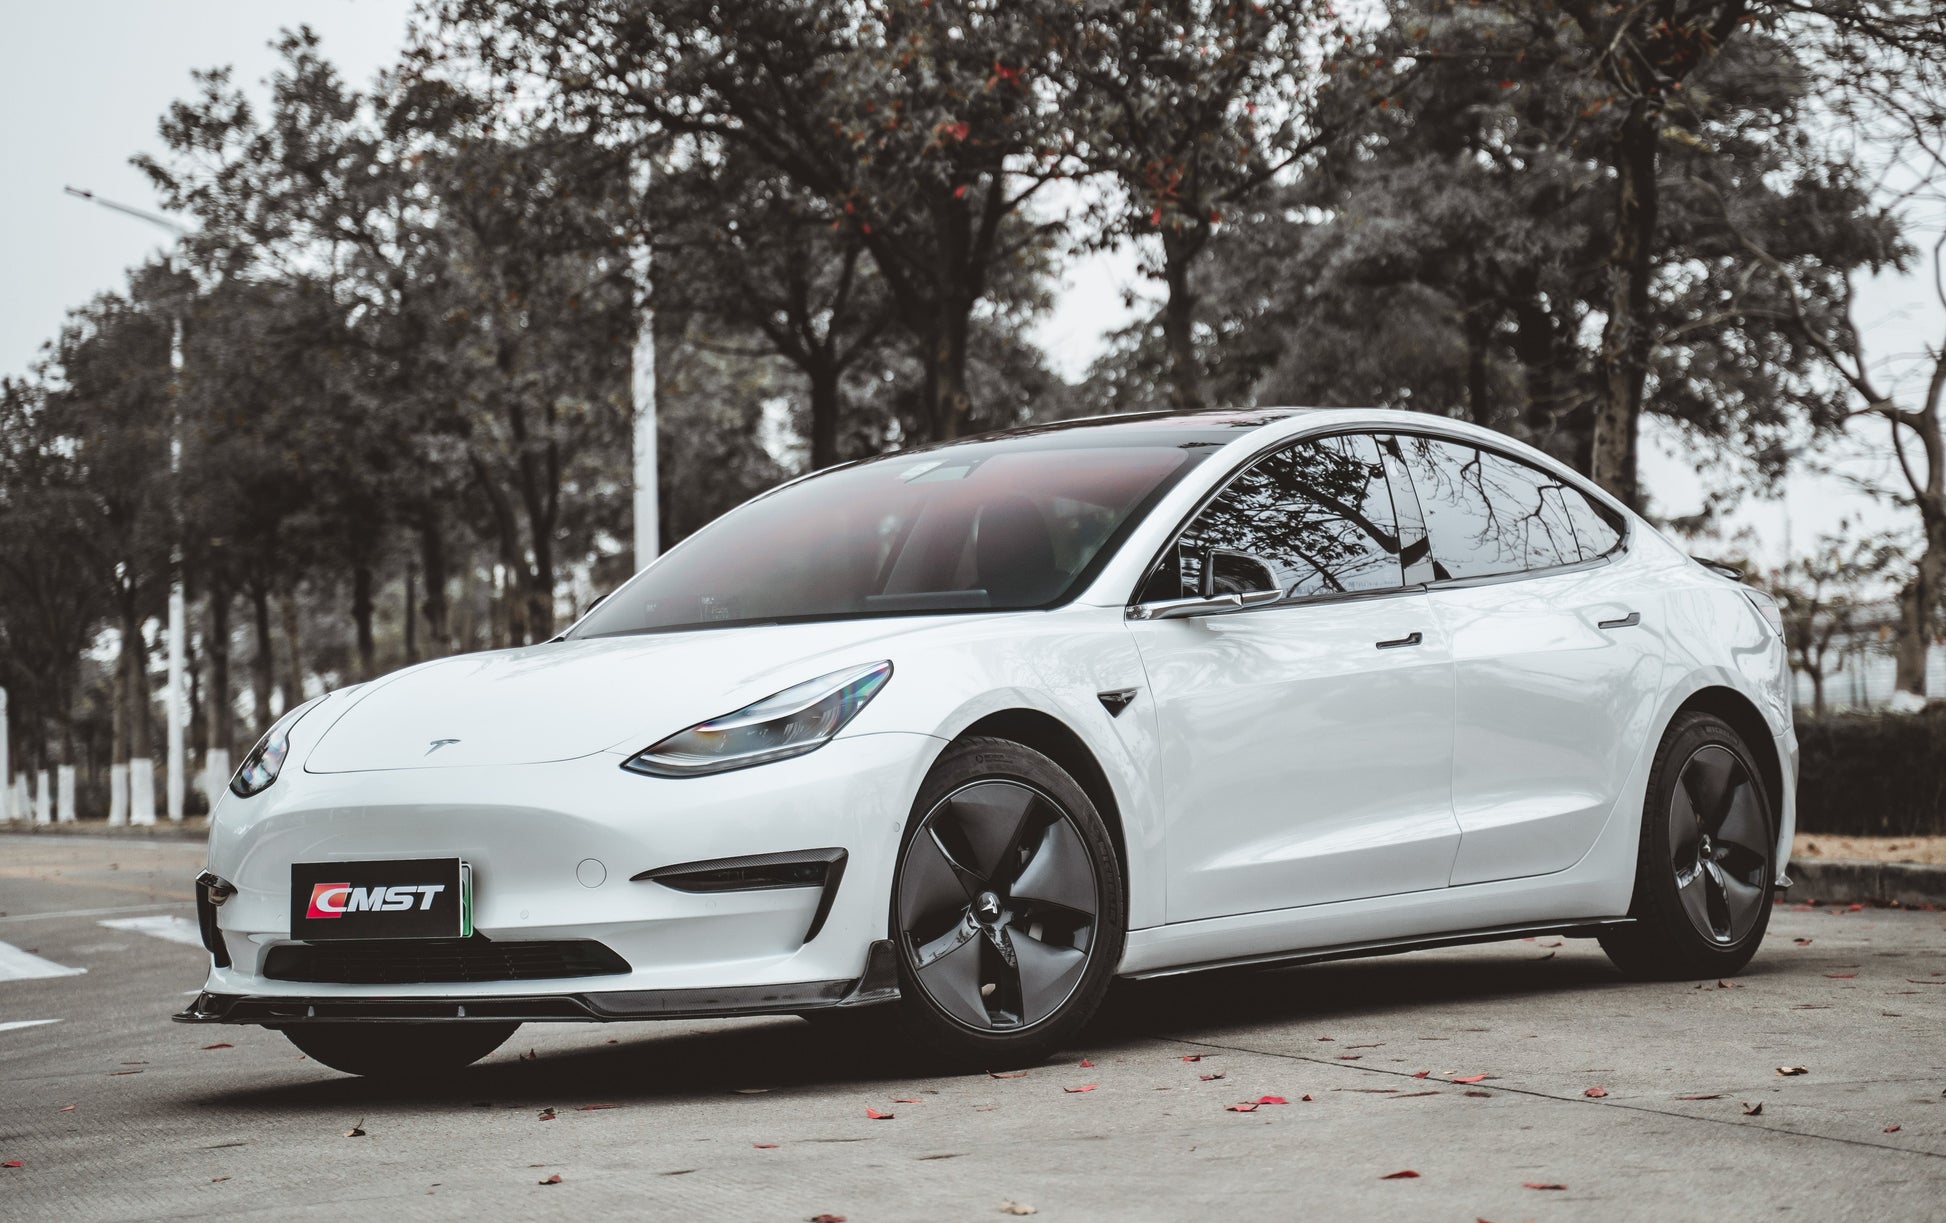 TESERY×CMST Tesla Model 3 Carbon Fiber Upper Valences - Tesery Official Store